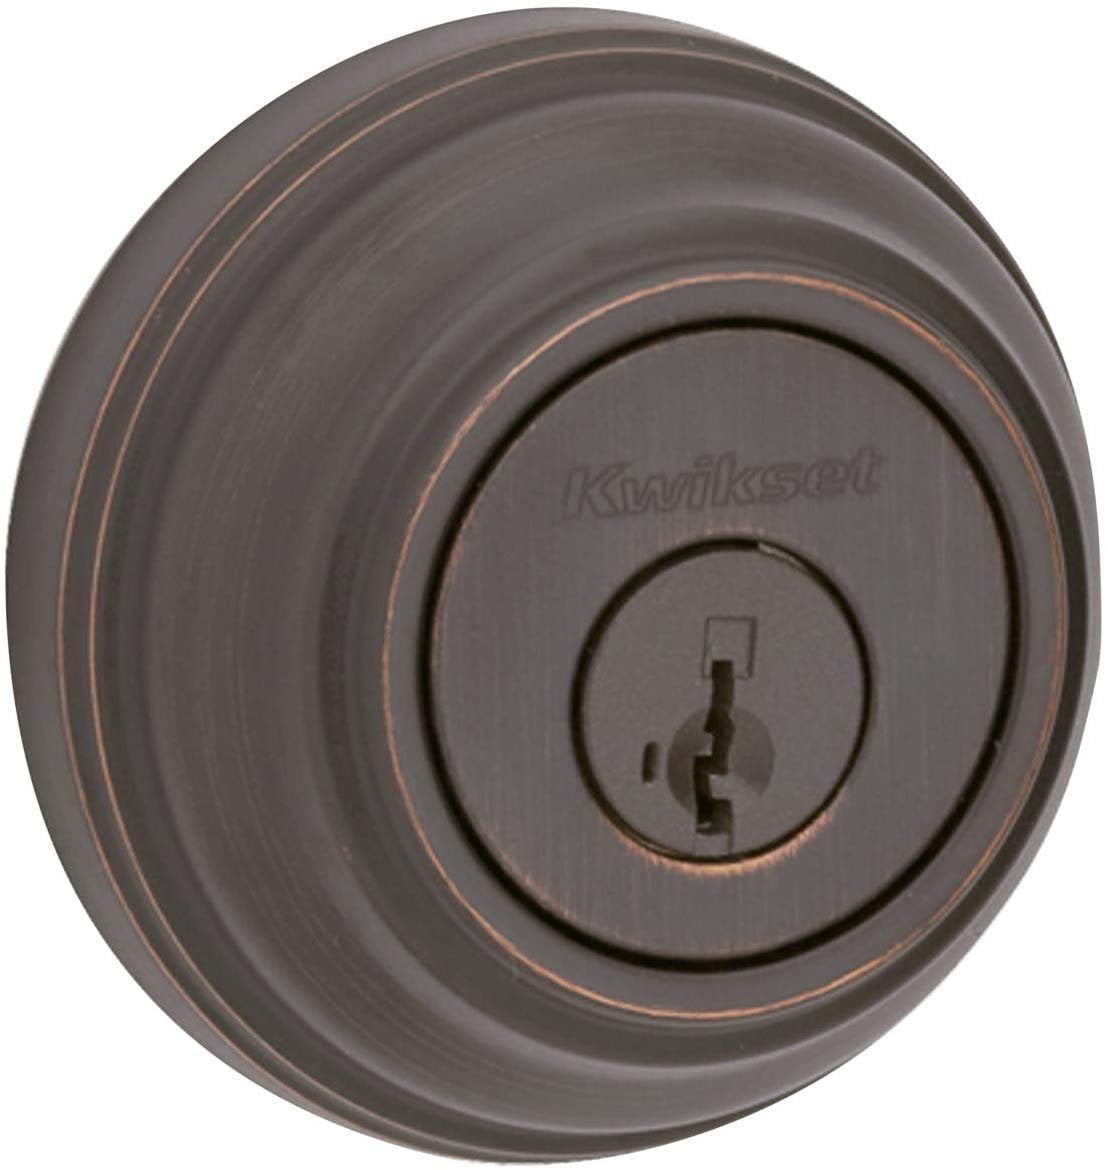 Kwikset 980 Single Cylinder Deadbolt featuring SmartKey in Venetian Bronze 